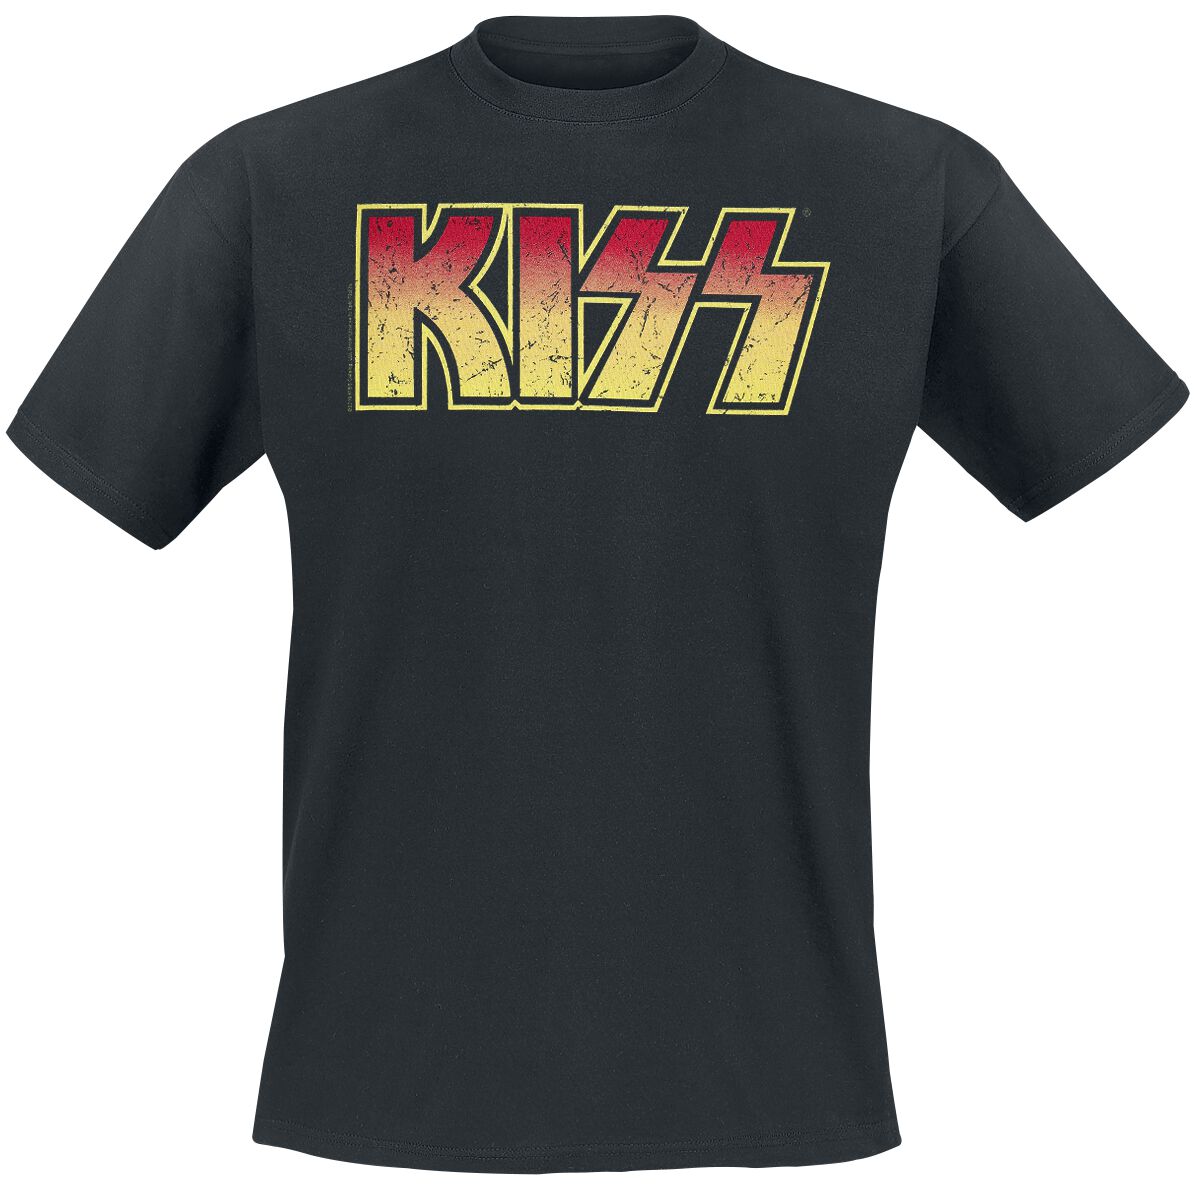 Kiss T-Shirt - Distressed Logo - XL bis 5XL - für Männer - Größe 5XL - schwarz  - Lizenziertes Merchandise!